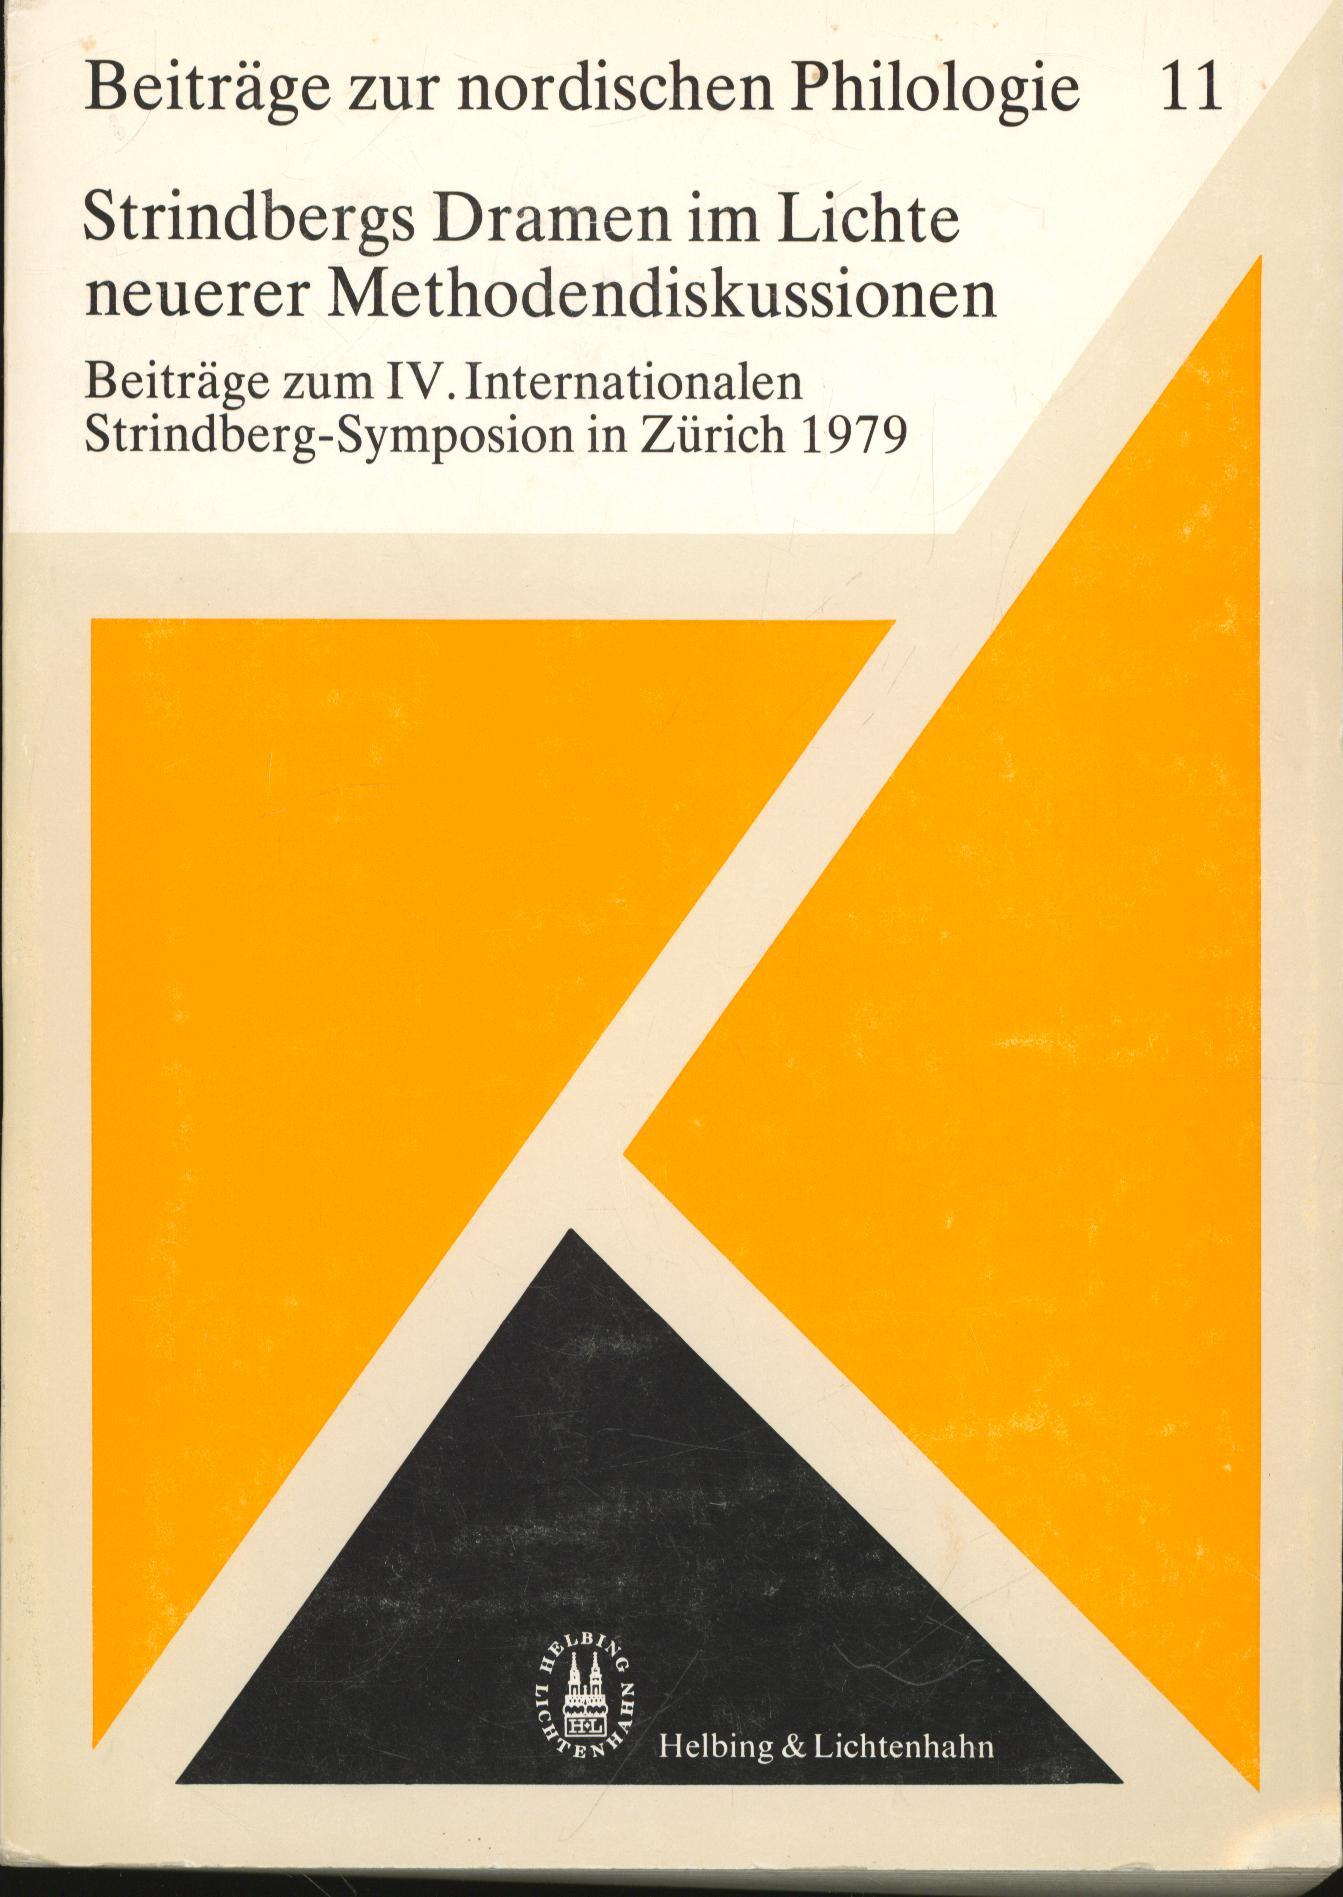 Strindbergs Dramen im Lichte neuerer Methodendiskussionen,Beiträge zum IV. Internationalen Strindberg-Symposion in Zürich 1979